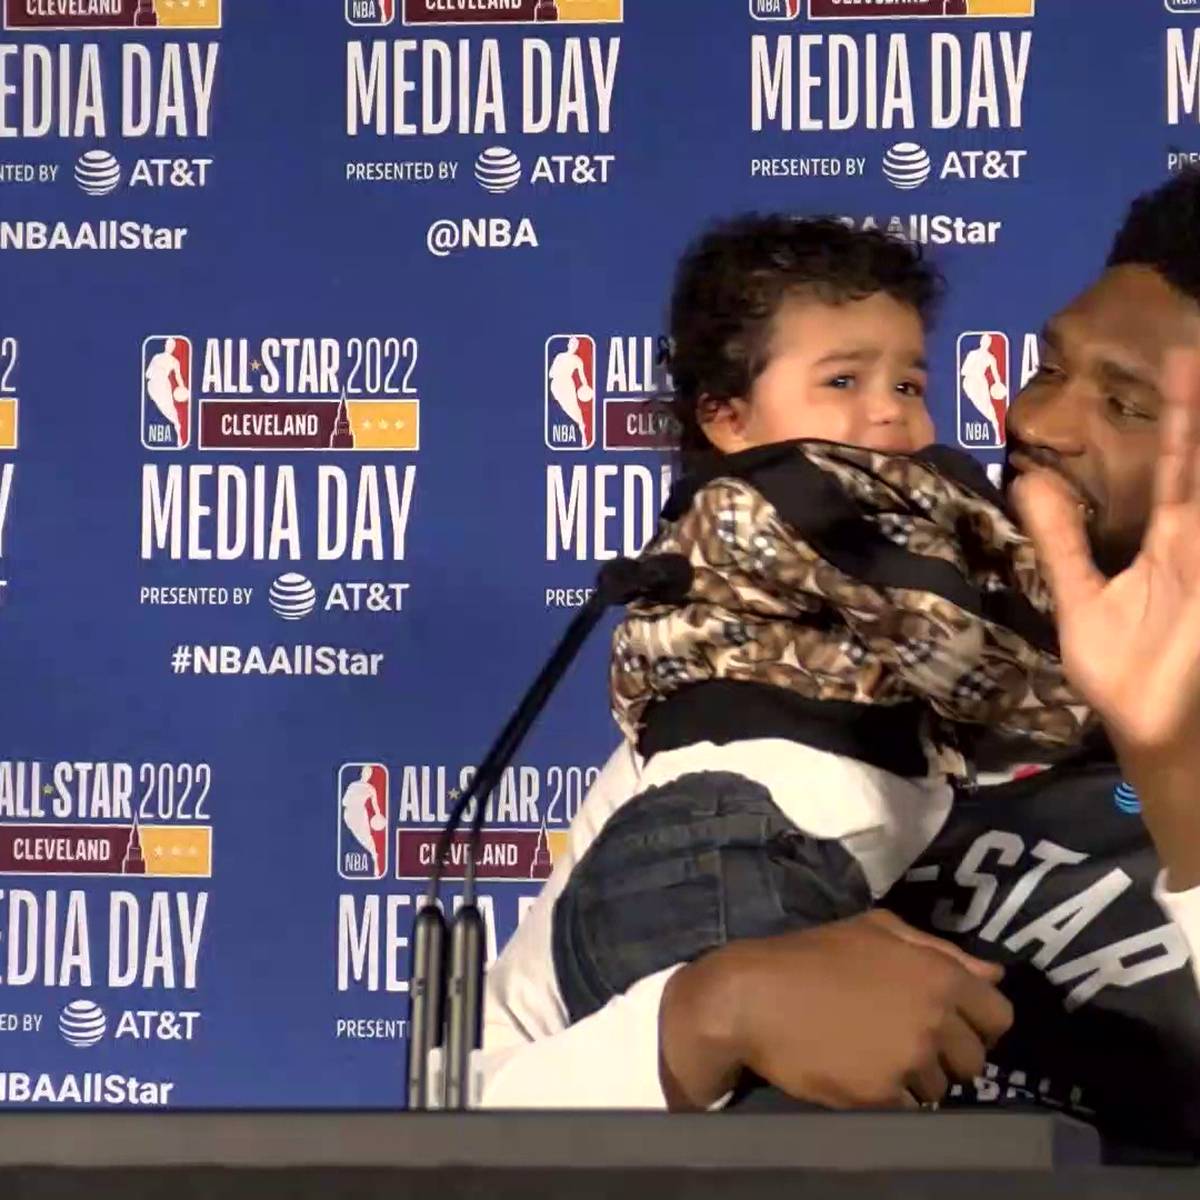 Wie süß! Sohn von NBA-Star crasht Pressekonferenz